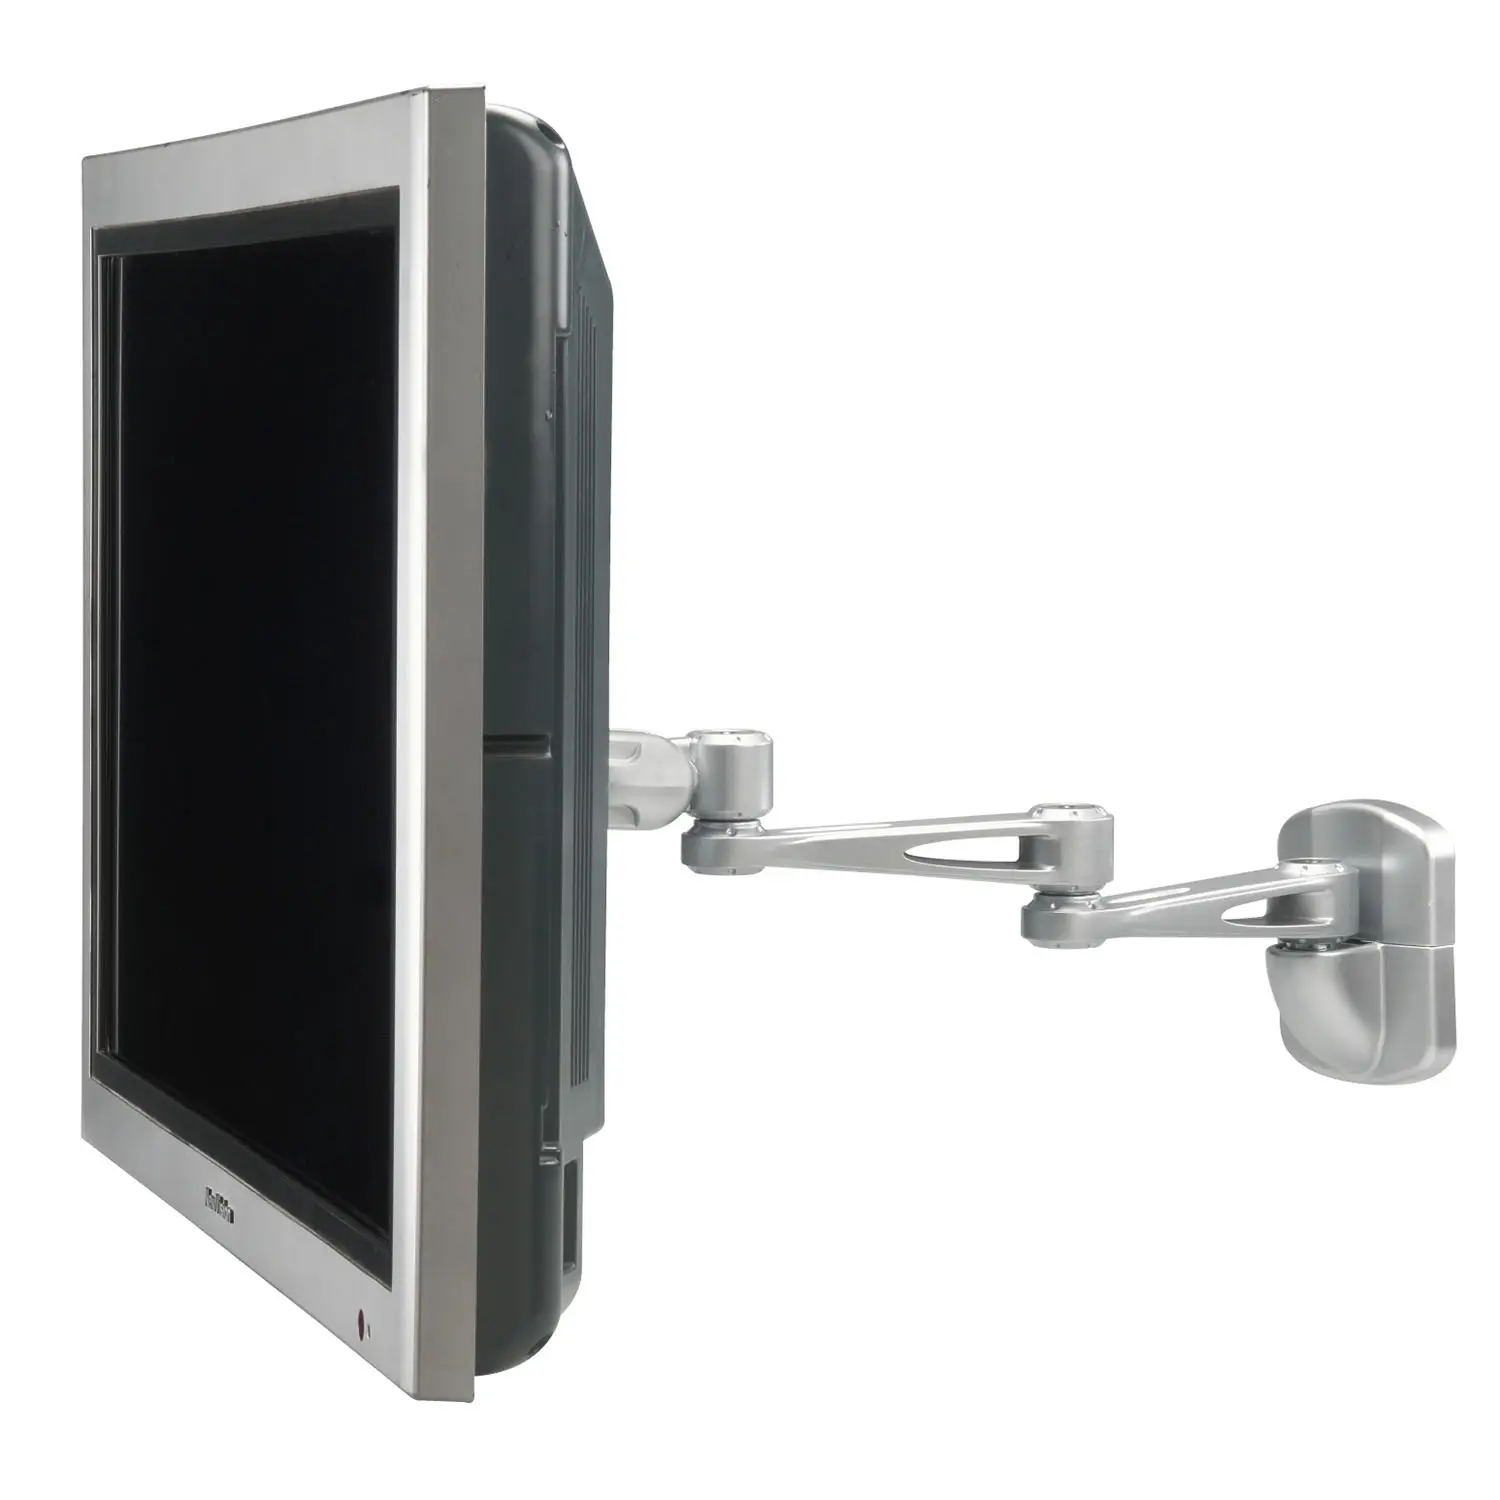 एलसीडी टीवी मॉनिटर स्विंग आर्म माउंट स्टैंड मॉनिटर दीवार पर स्टैंड मॉनिटर 15 डिग्री नीचे झुका सकता है और घुमाया जा सकता है।